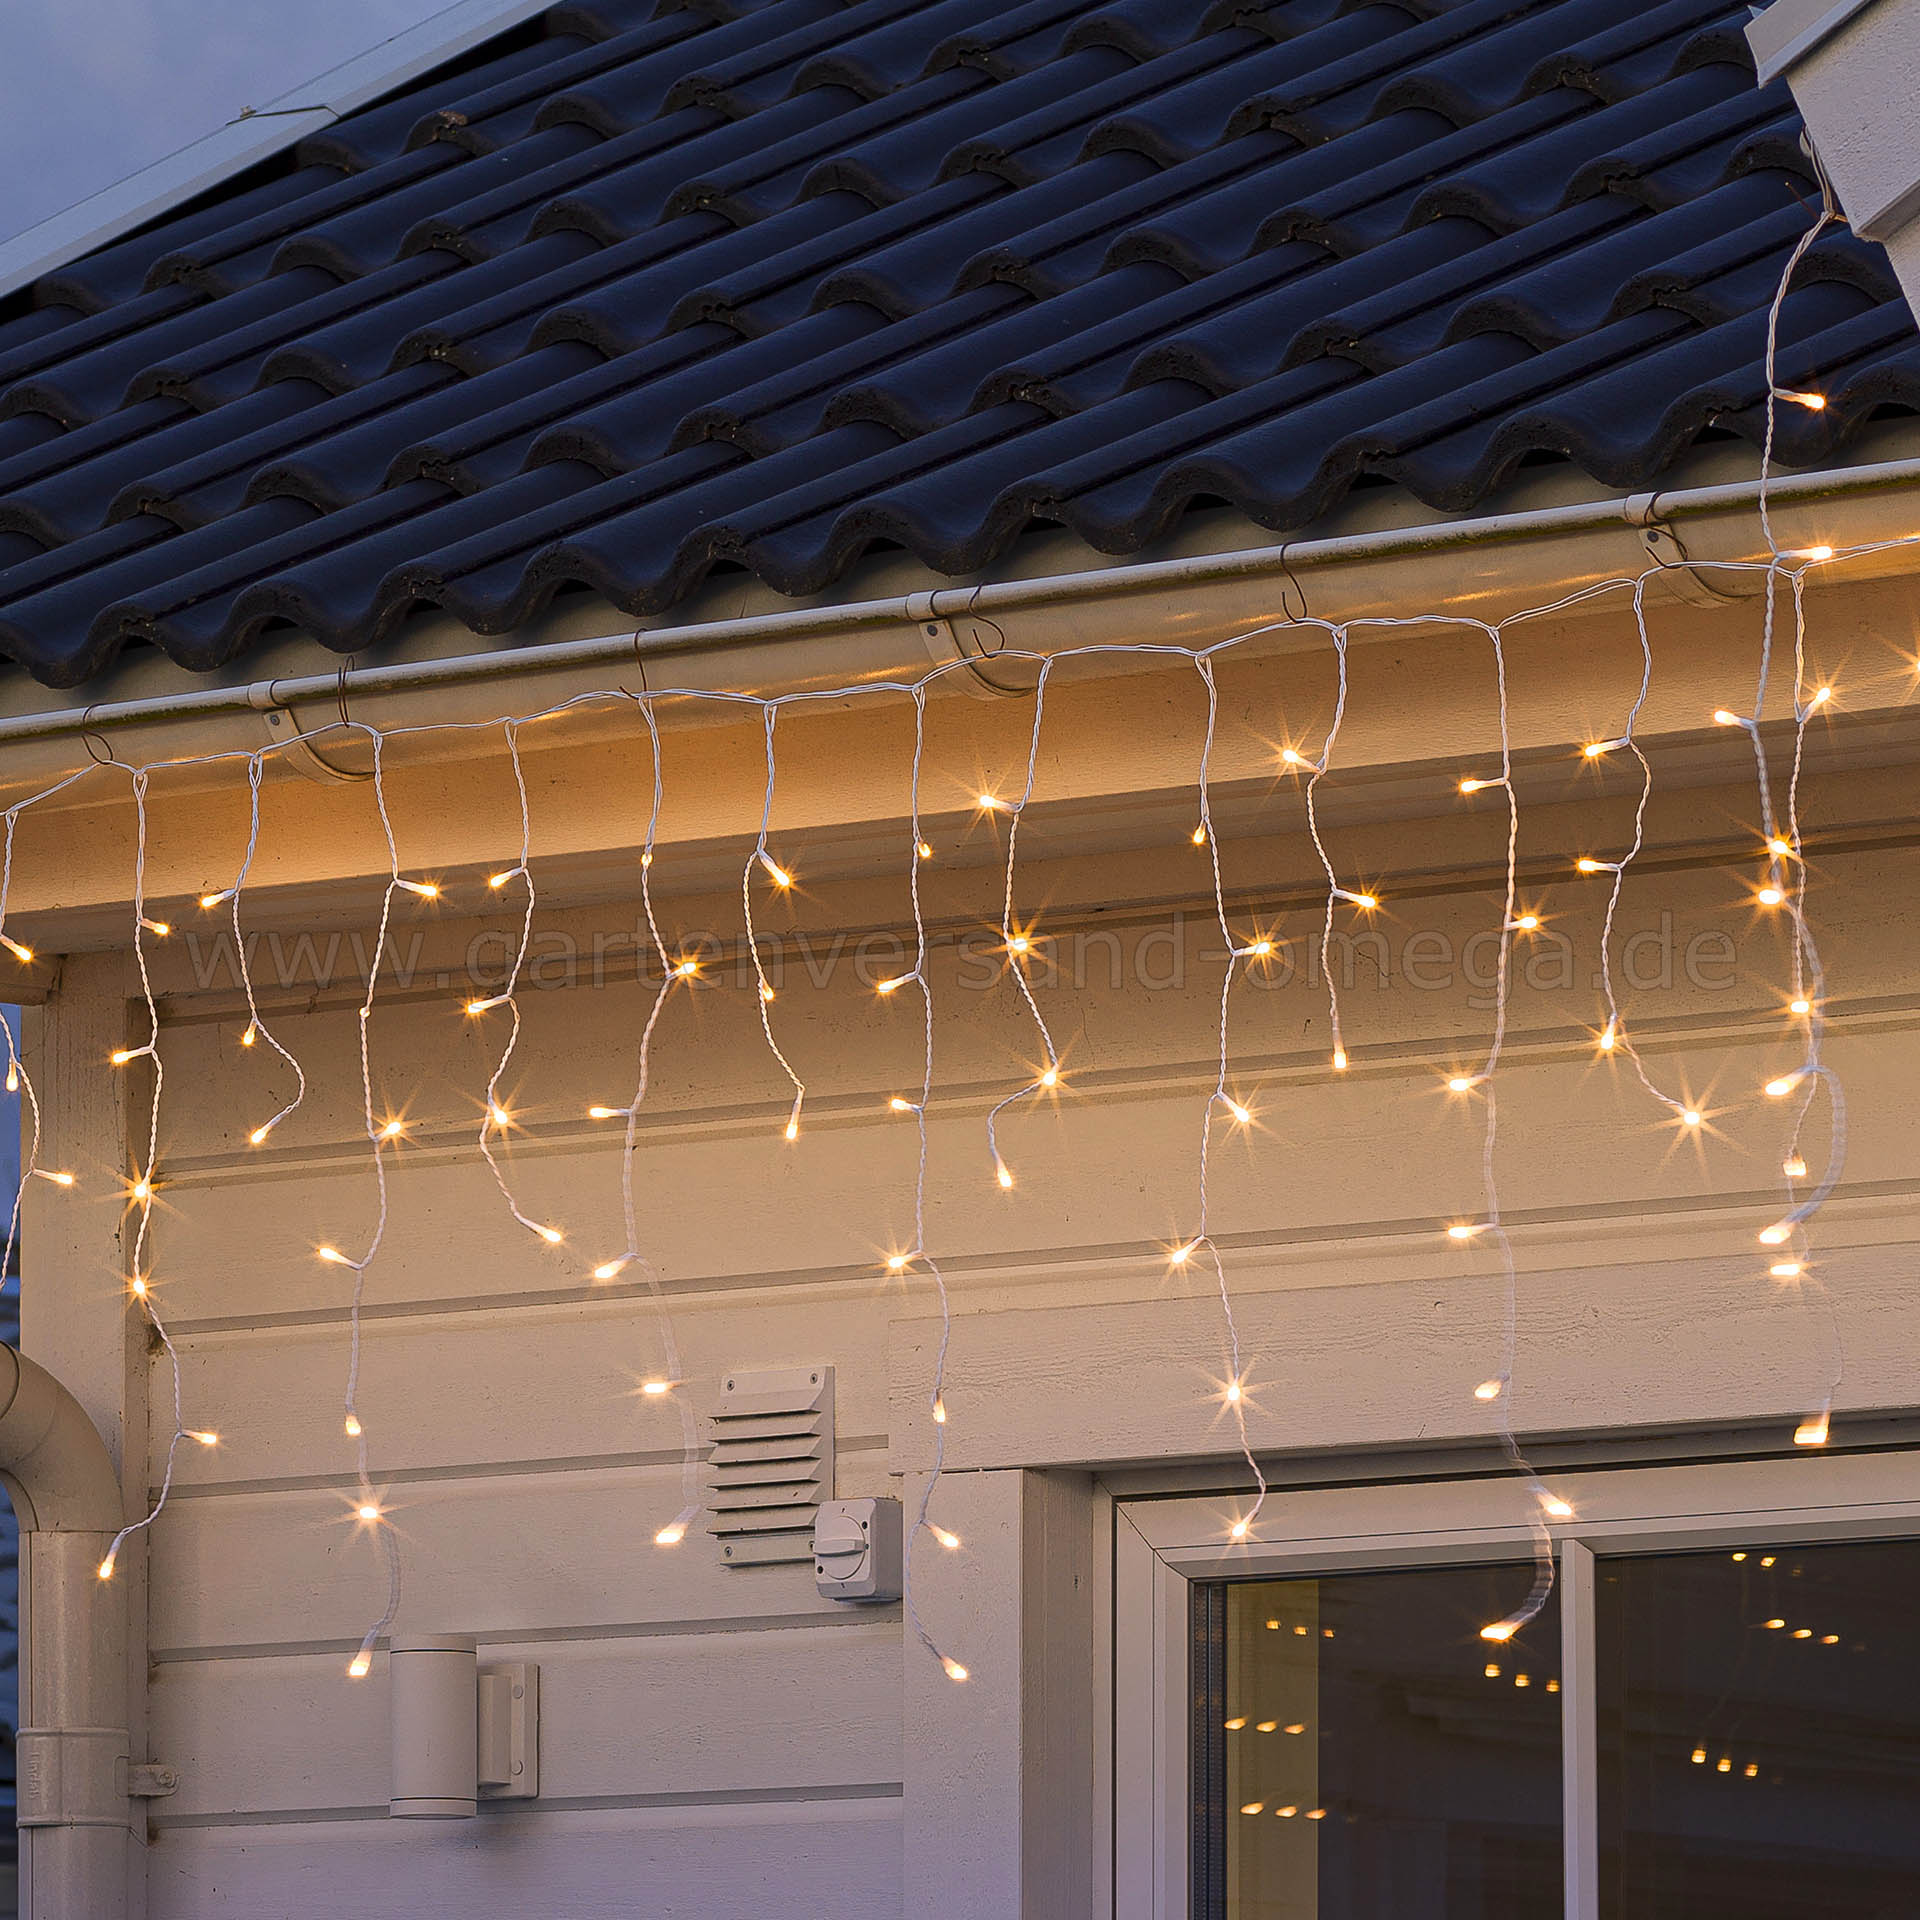 LED Eisregenvorhang gefrostet Glimmereffekt - Lichterkettenvorhang,  Weihnachtsaußenbeleuchtung Lichteffekt, Dachrinnenlichterkette, Eisregen-Lichterkette,  Lichtervorhang warme Lichtfarbe, Lichterkette für Dachrinnen, LED-Lichtvorhang  blinkend